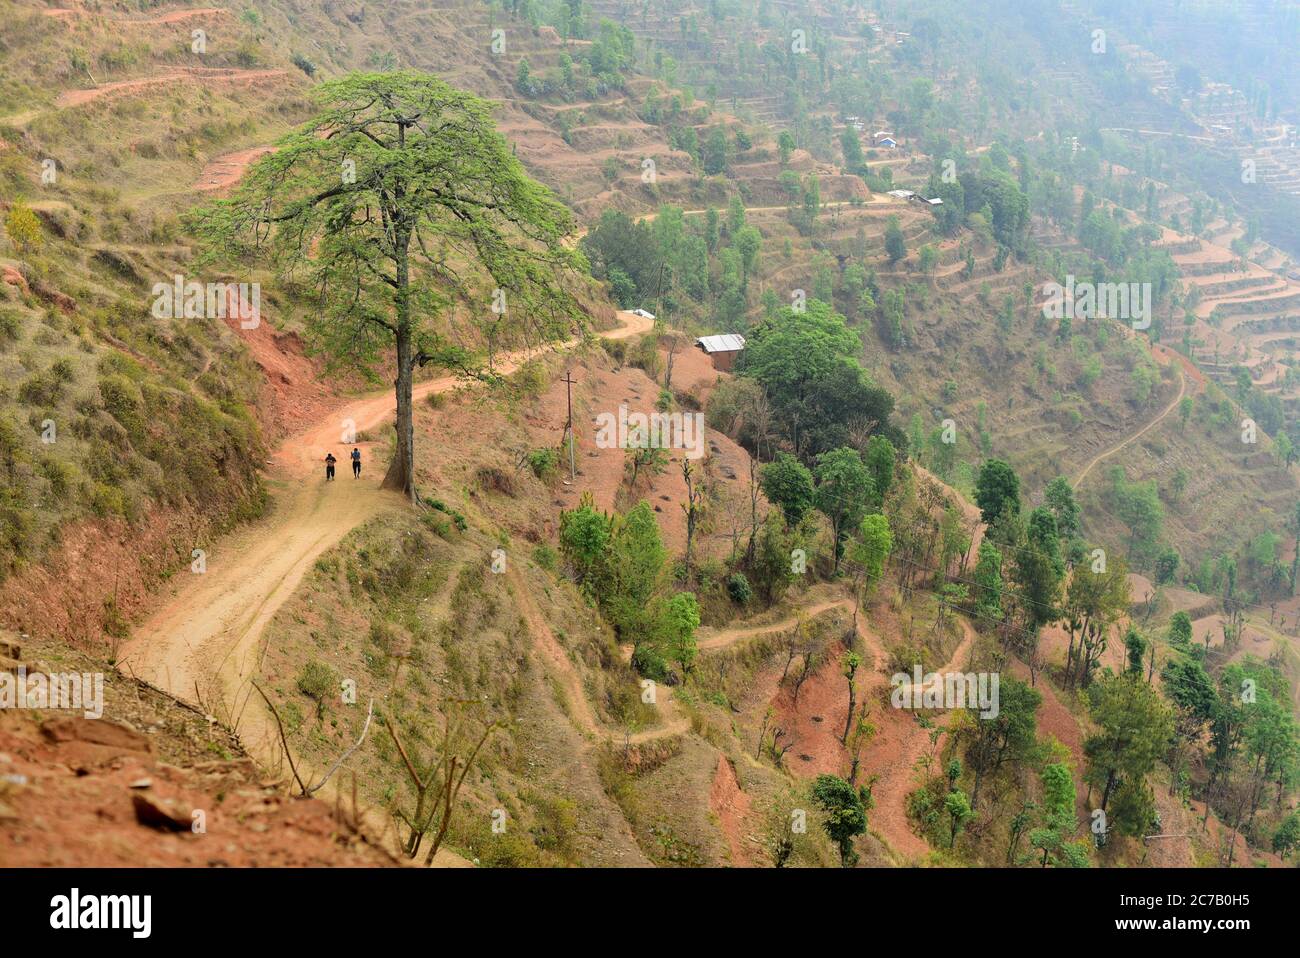 Un sentier rural sur une colline escarpée au village de Chandani Mandan, où des glissements de terrain provoqués par le tremblement de terre ont eu lieu en 2015. Chandani Mandan, district de Kavrepalanchok, Bagmati Pradesh, Népal. Le réseau routier au Népal a subi des dommages modérés à la suite du tremblement de terre de 2015. Le montant total des dommages estimés au réseau routier stratégique (SRN) s'élevait à 45,9 millions de USD, tandis que les pertes totales étaient estimées à 5,26 millions de USD. Sur le réseau routier local (RRN), les dommages totaux estimés étaient de 124,85 millions USD, tandis que les pertes totales étaient de 42,74 millions USD. La route et les voies rurales ont également été endommagées ou coupées. Banque D'Images